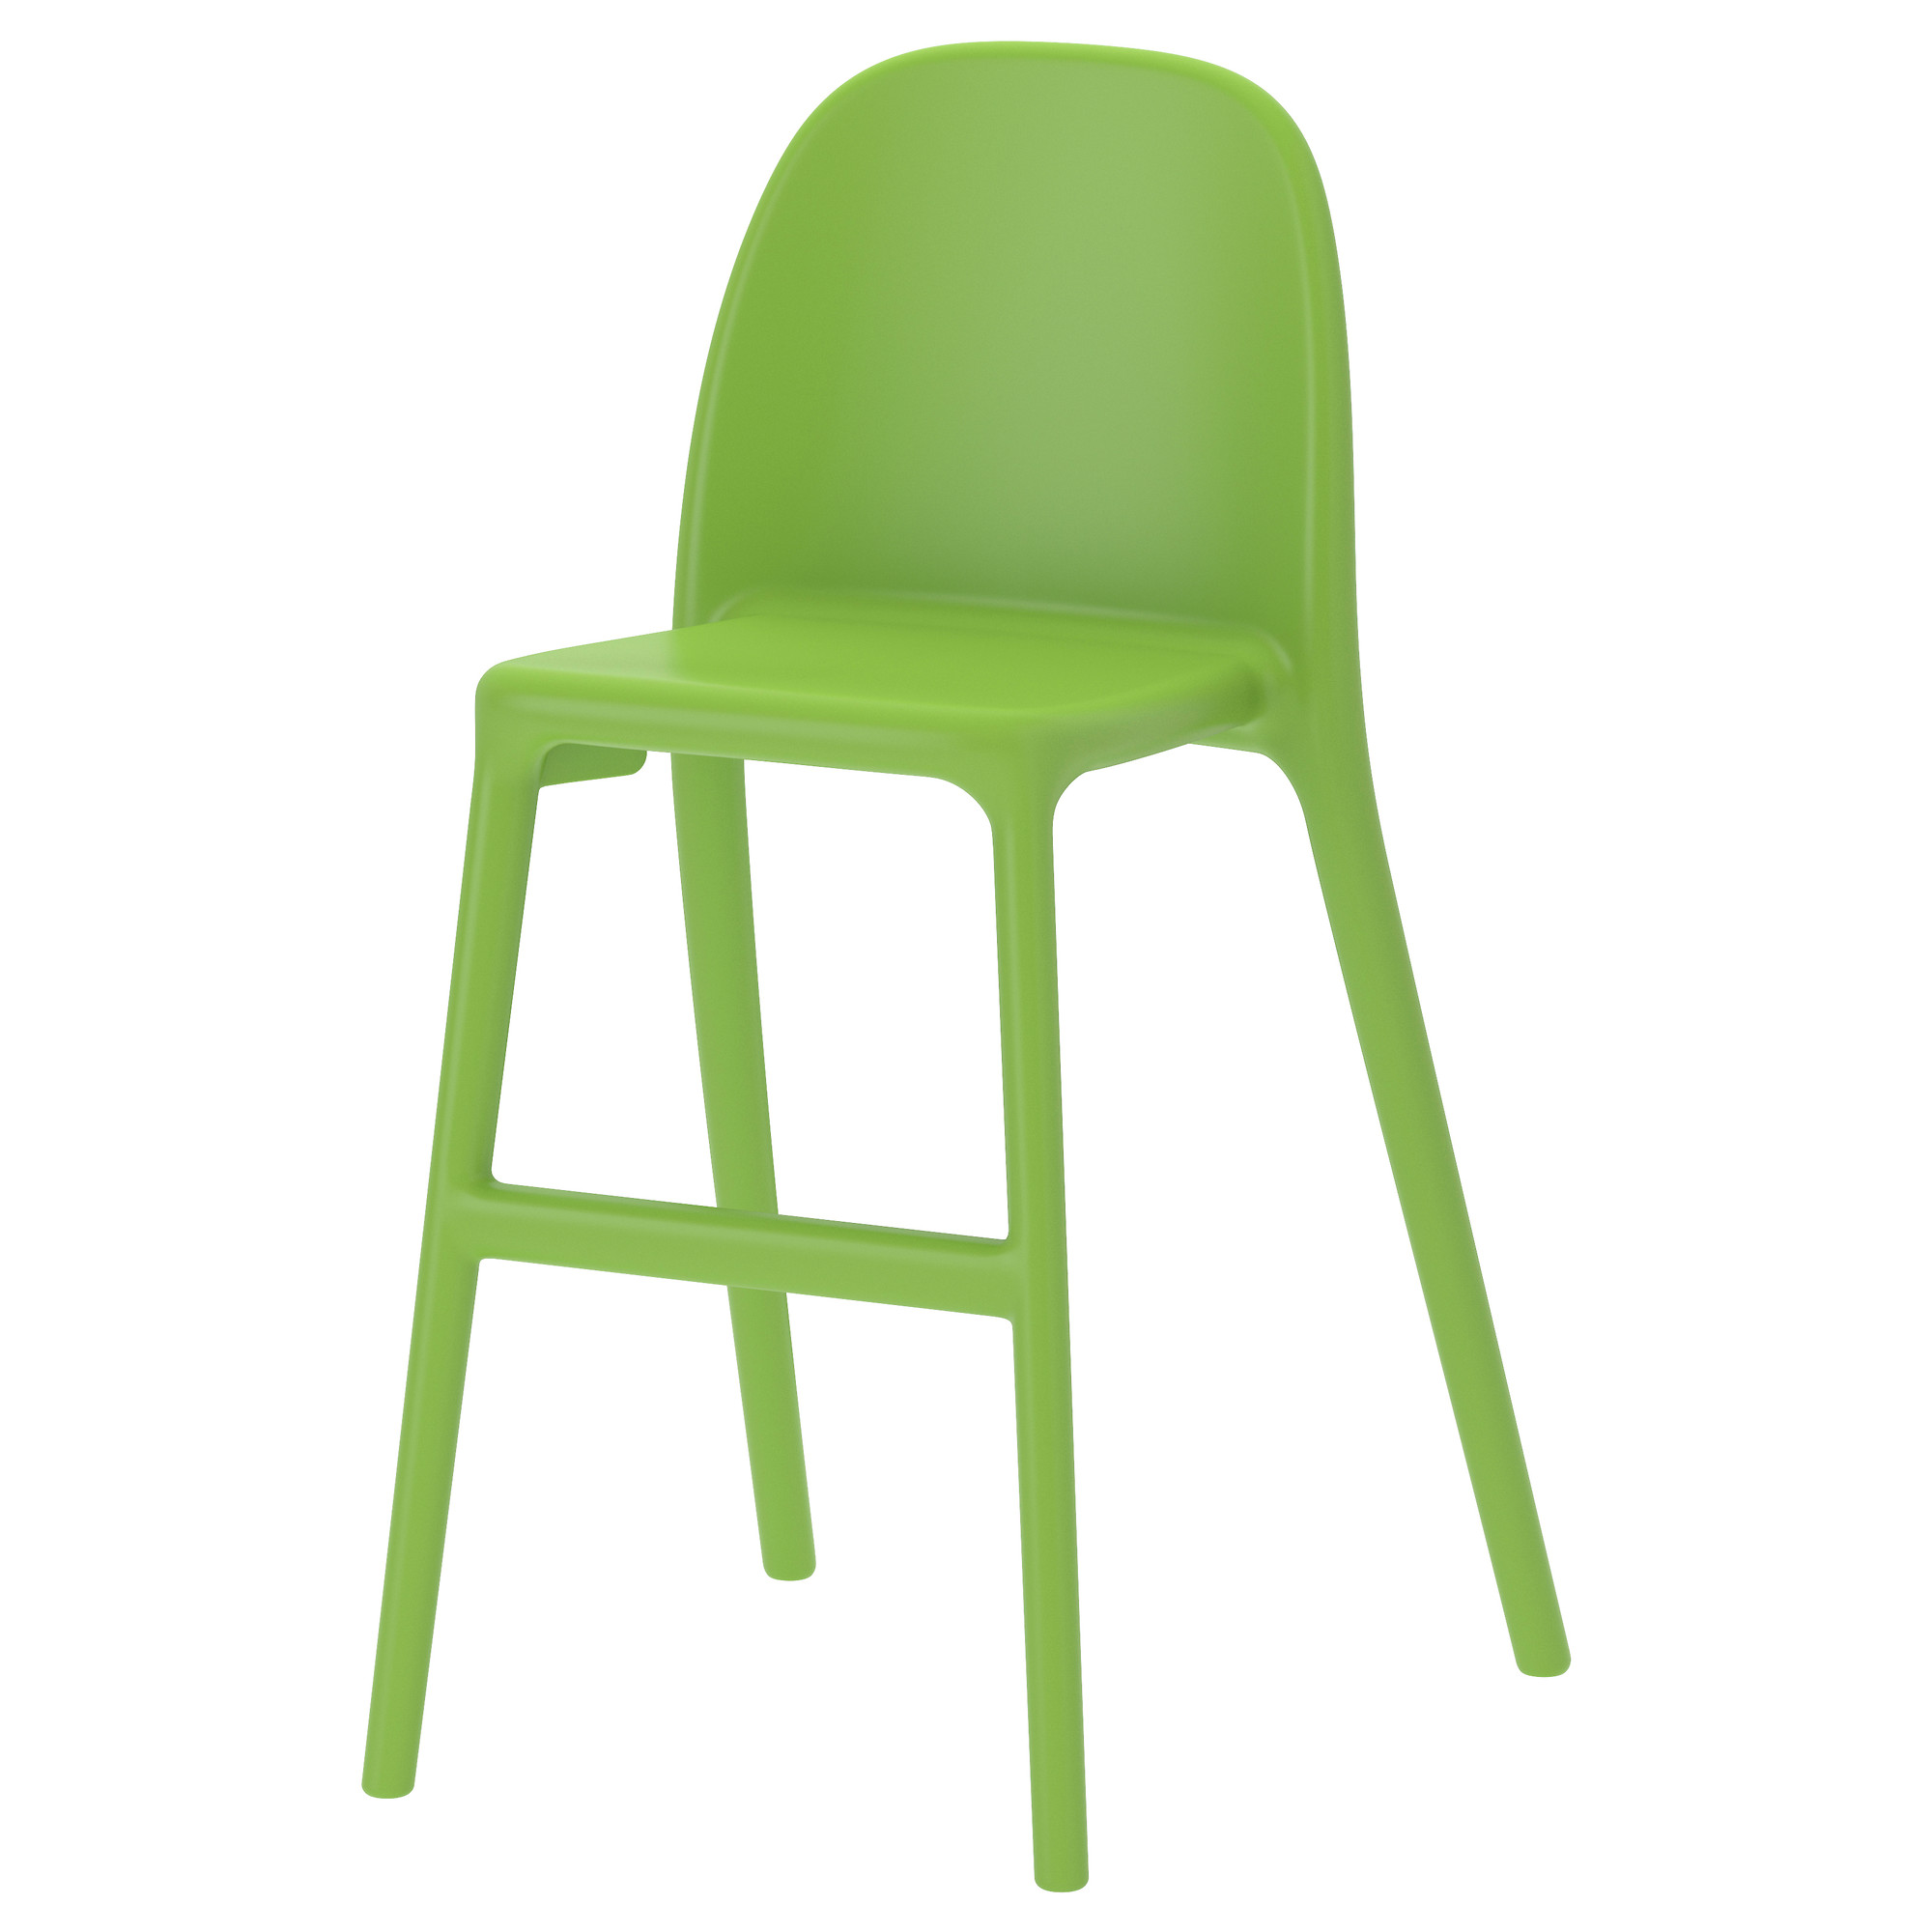 URBAN Junior chair - green ...